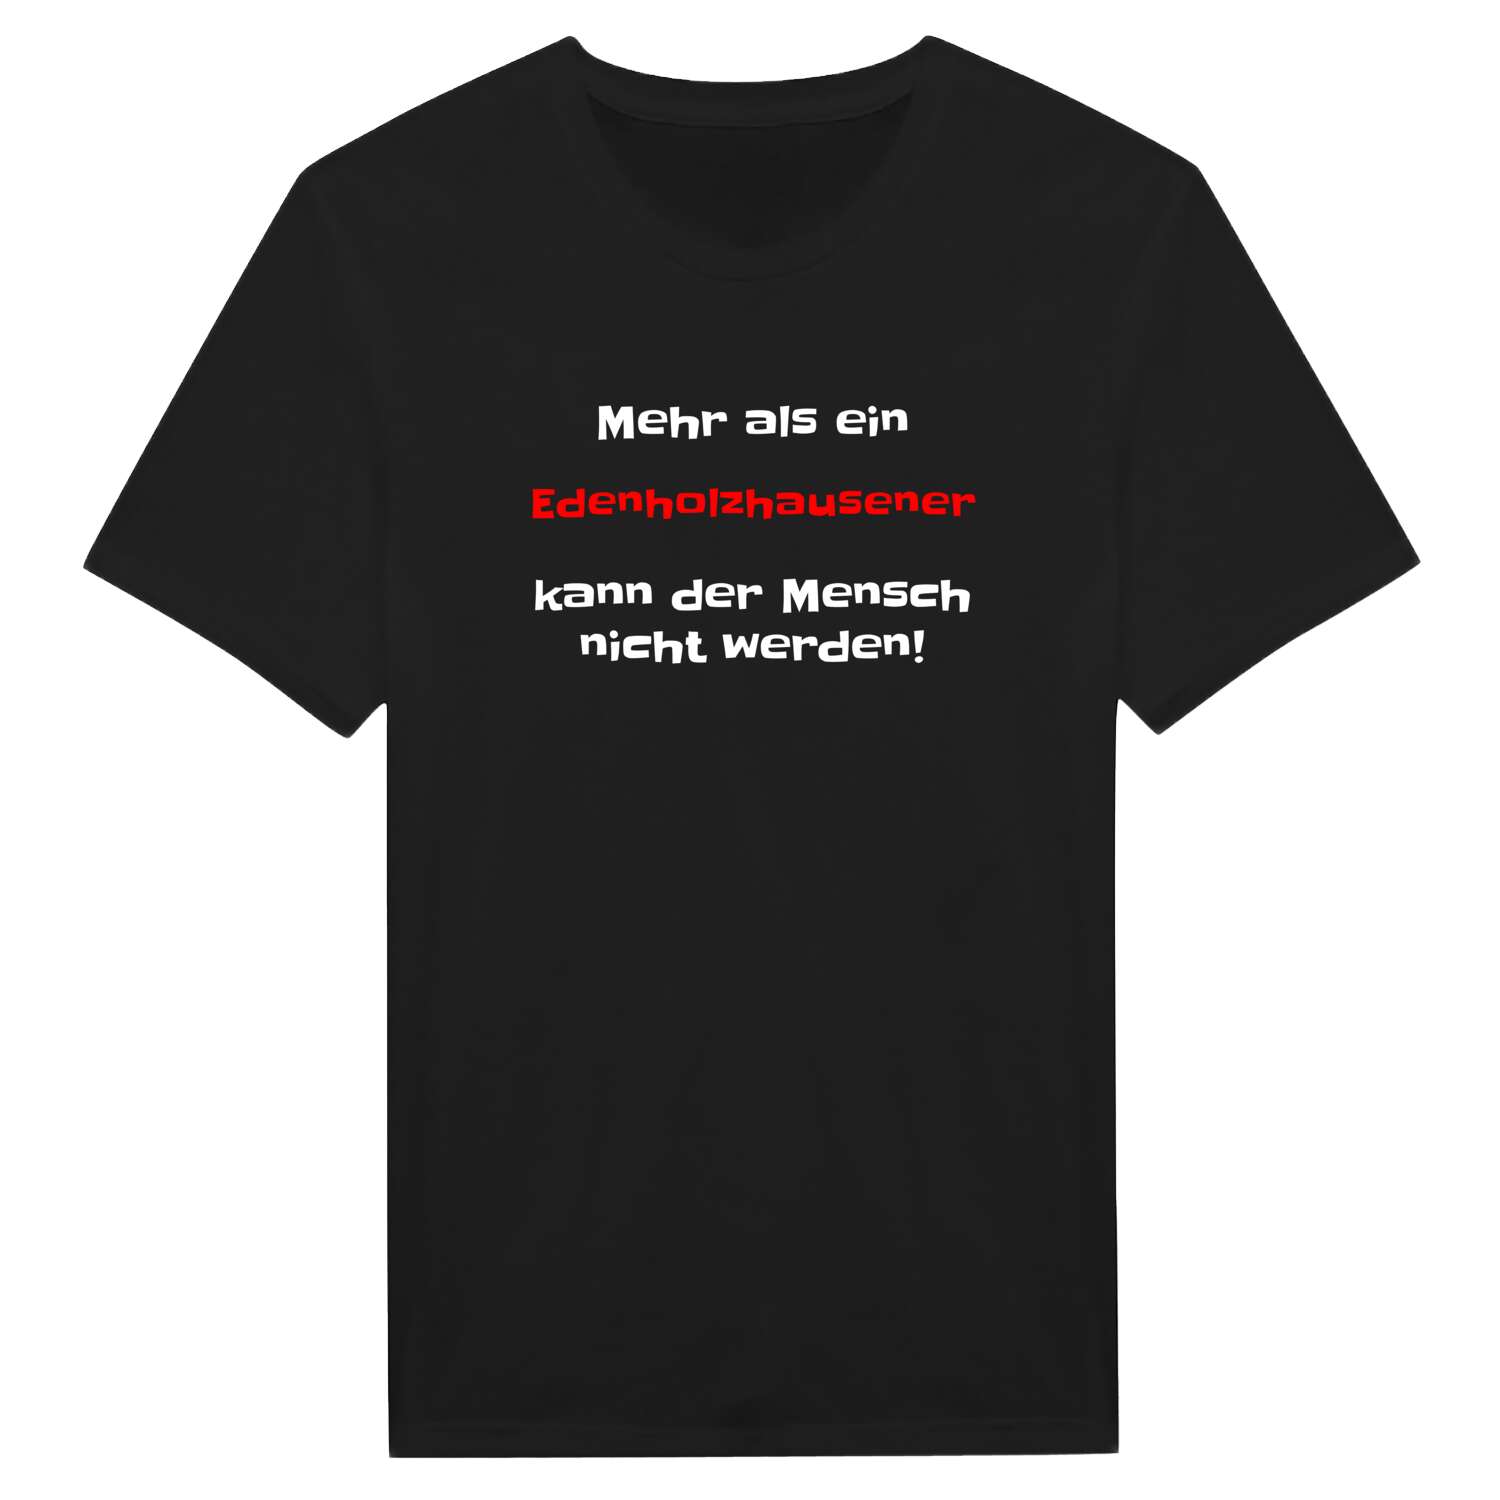 Edenholzhausen T-Shirt »Mehr als ein«